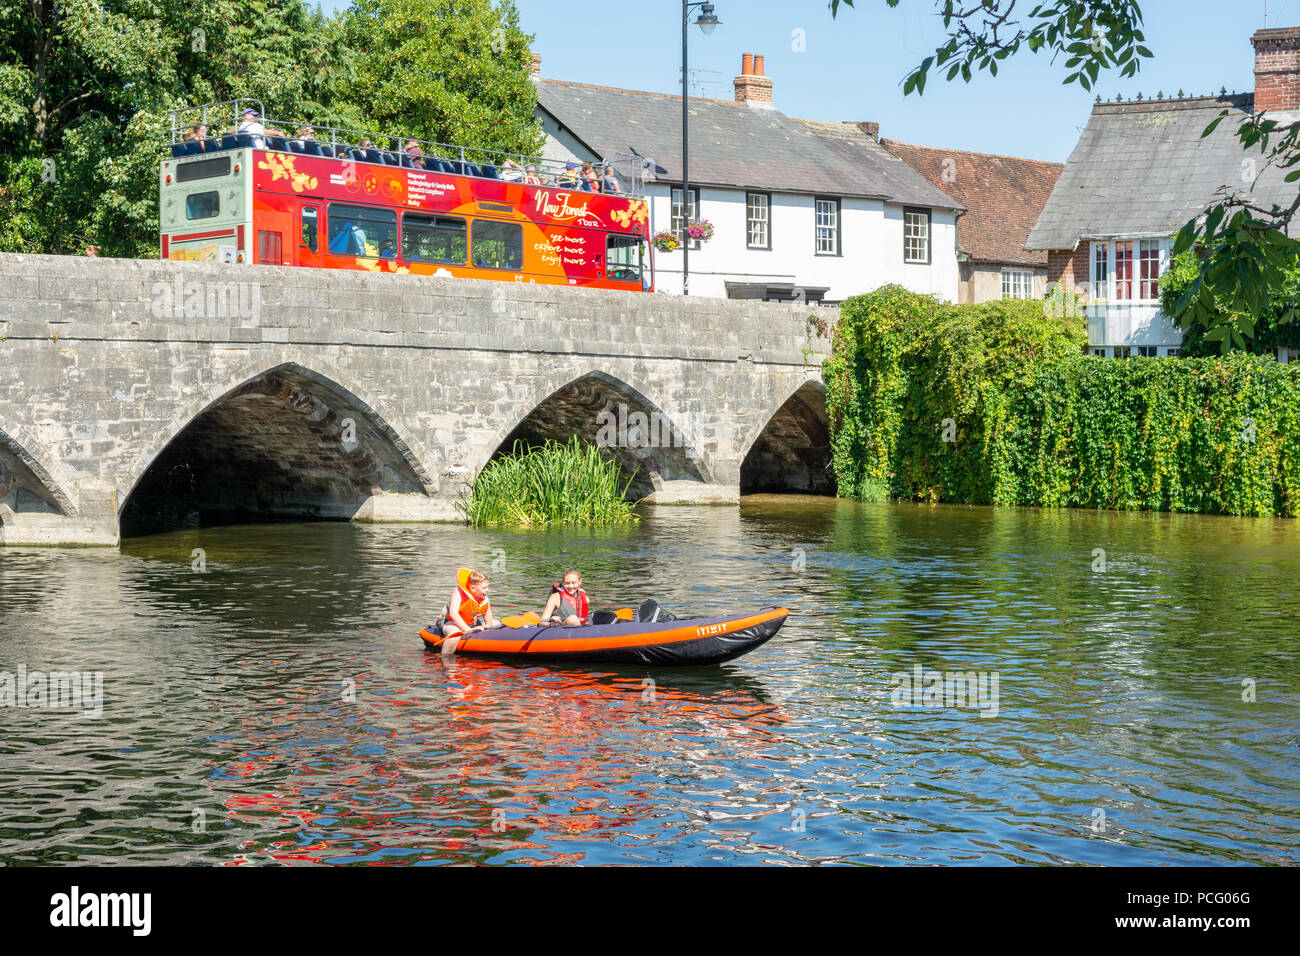 Enfants jouant à bord d'un canot pneumatique sur une rivière par temps chaud, Royaume-Uni Banque D'Images